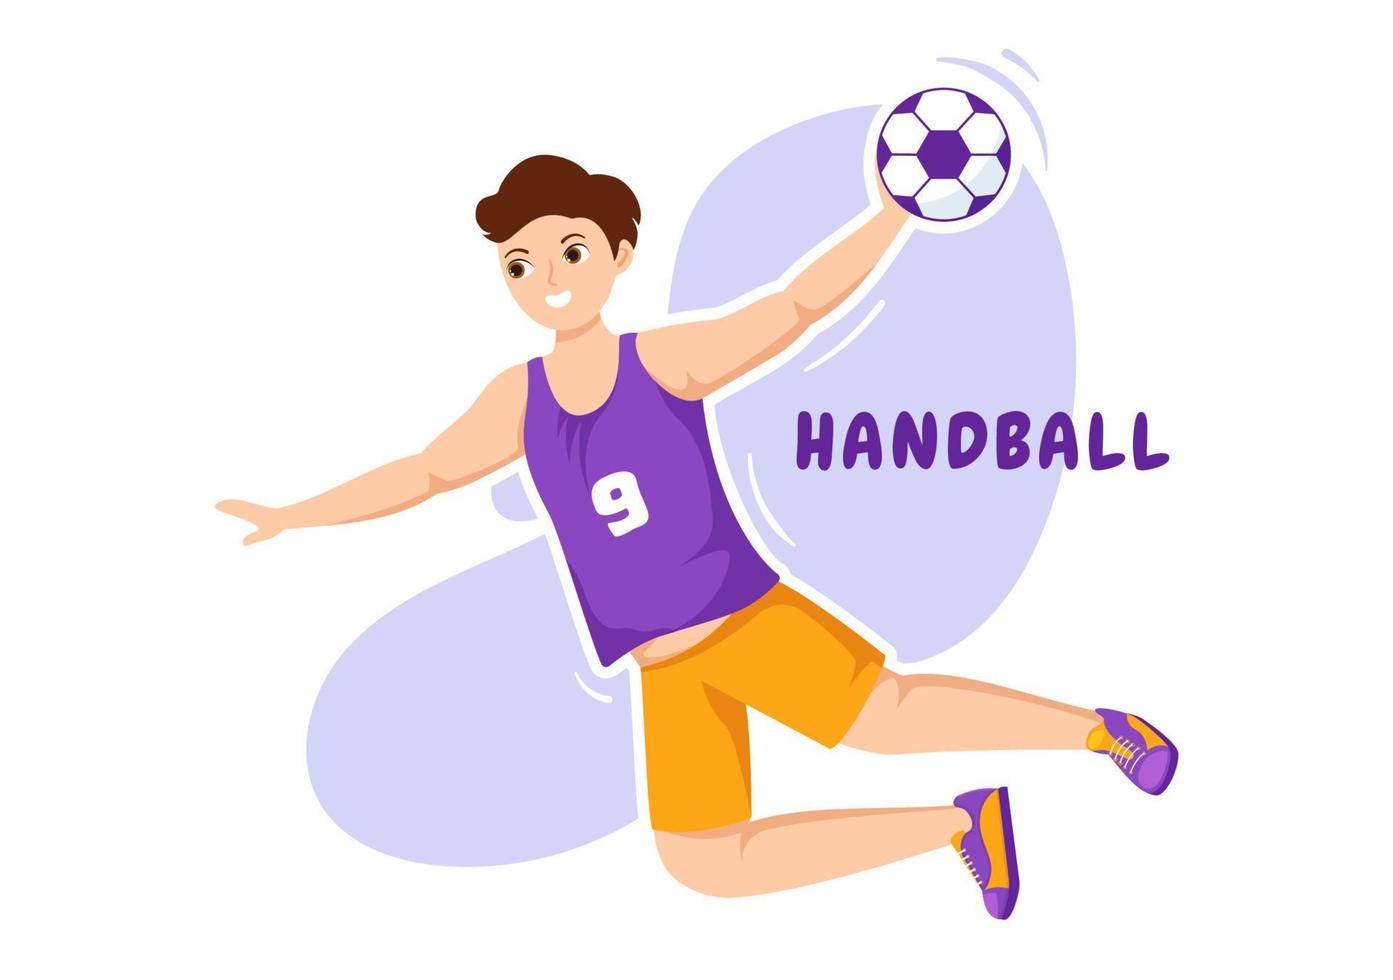 handboll illustration av en spelare rörande de boll med hans hand och scoring en mål i en sporter konkurrens platt tecknad serie hand teckning mall vektor